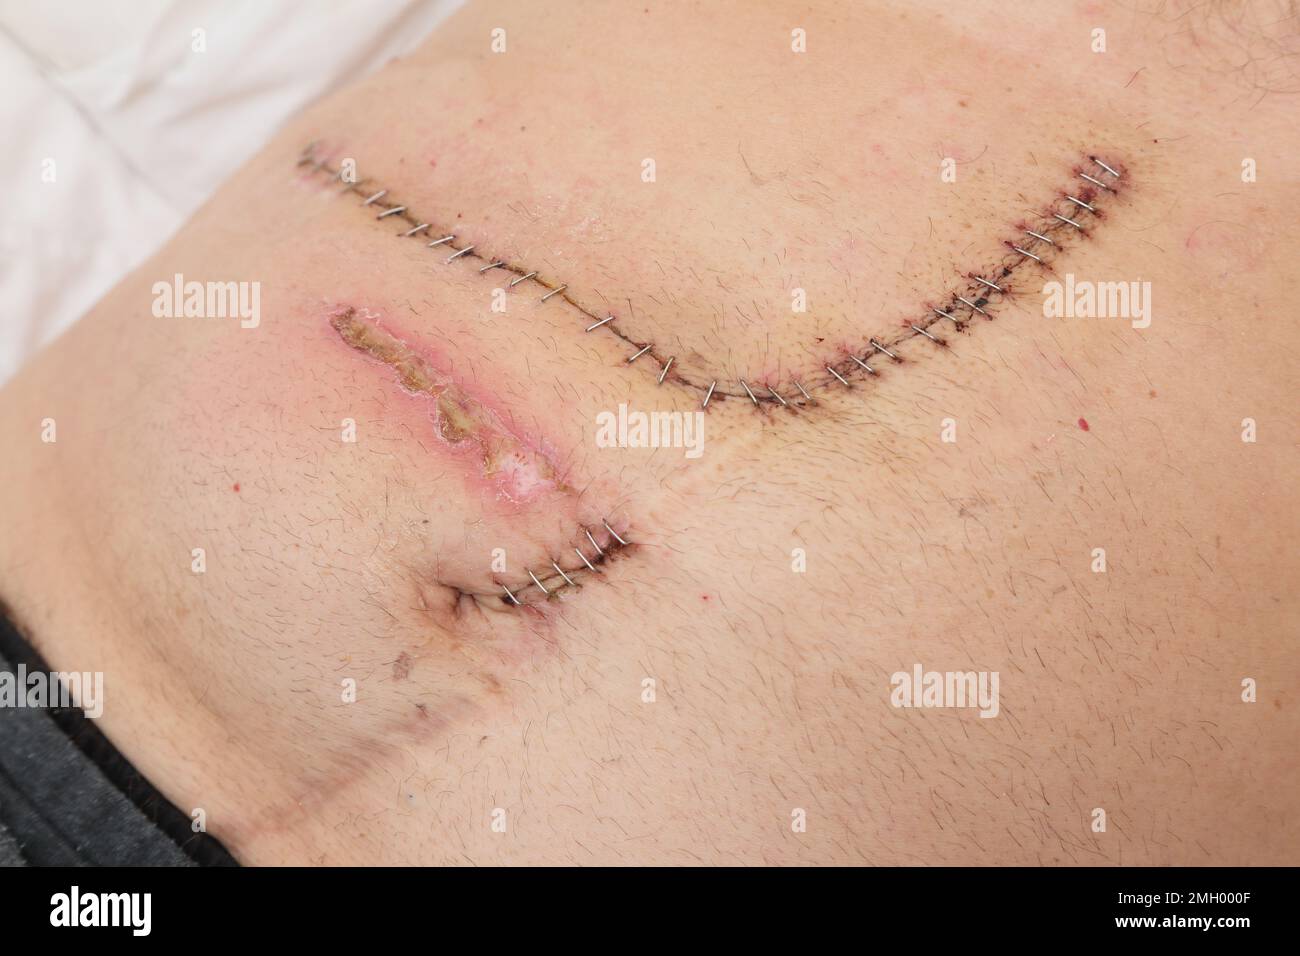 Primo piano delle graffette chirurgiche utilizzate per chiudere l'incisione dopo l'intervento chirurgico addominale e dolore da bendaggi pelle irritante Foto Stock